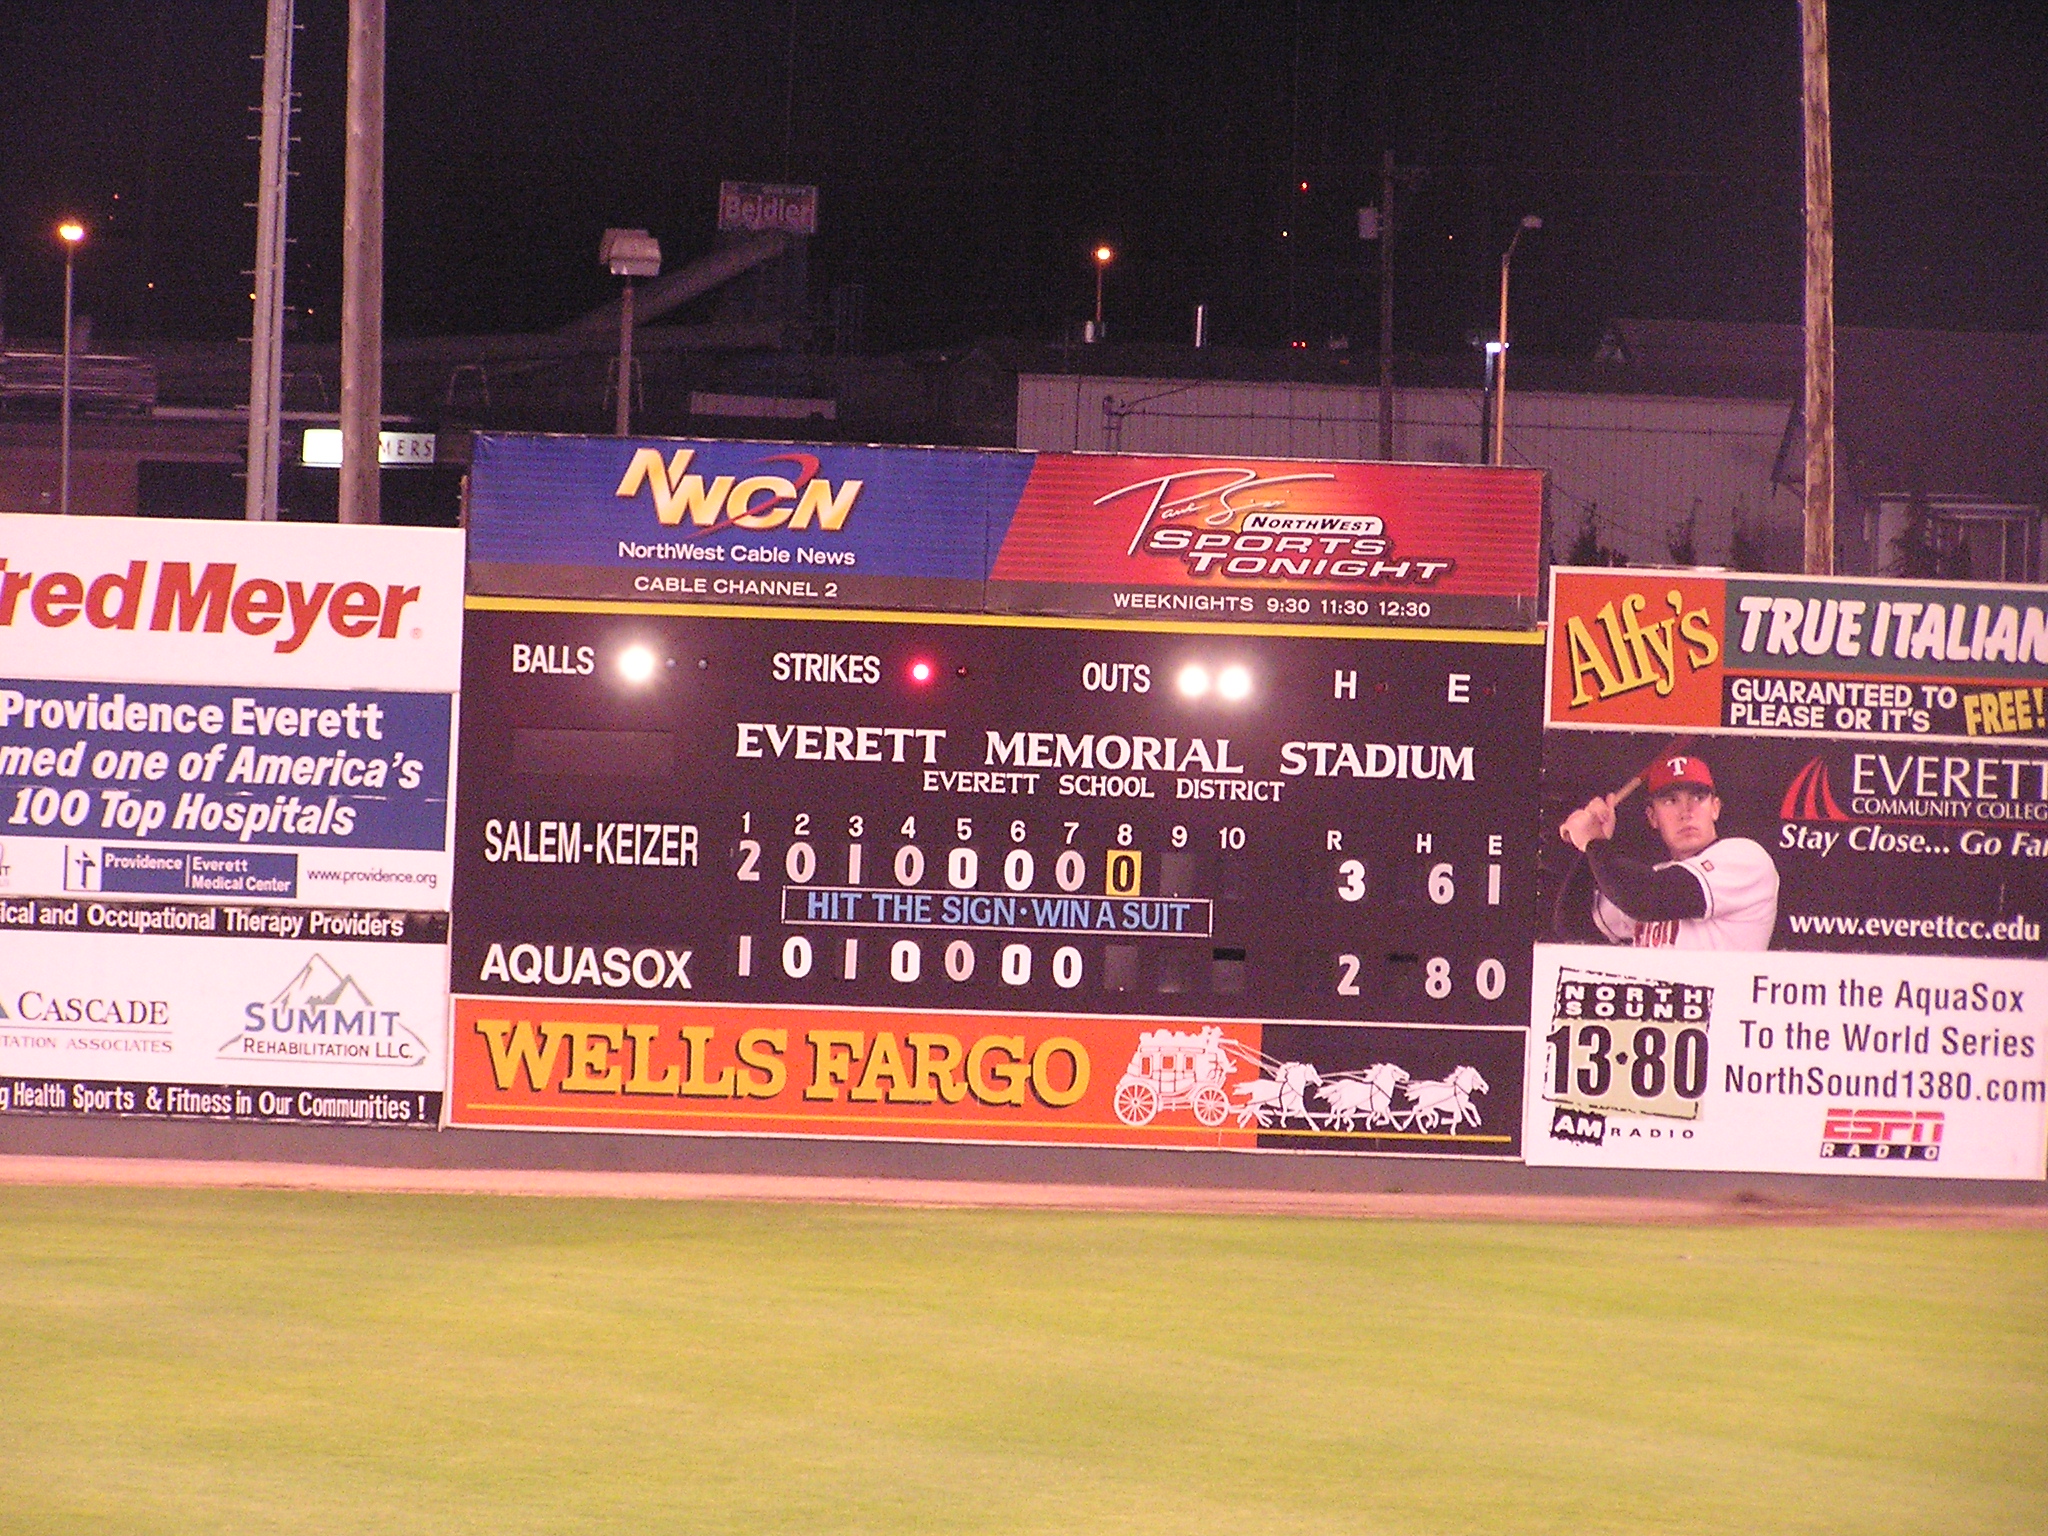 A simple Scoreboard in Everett, Washington